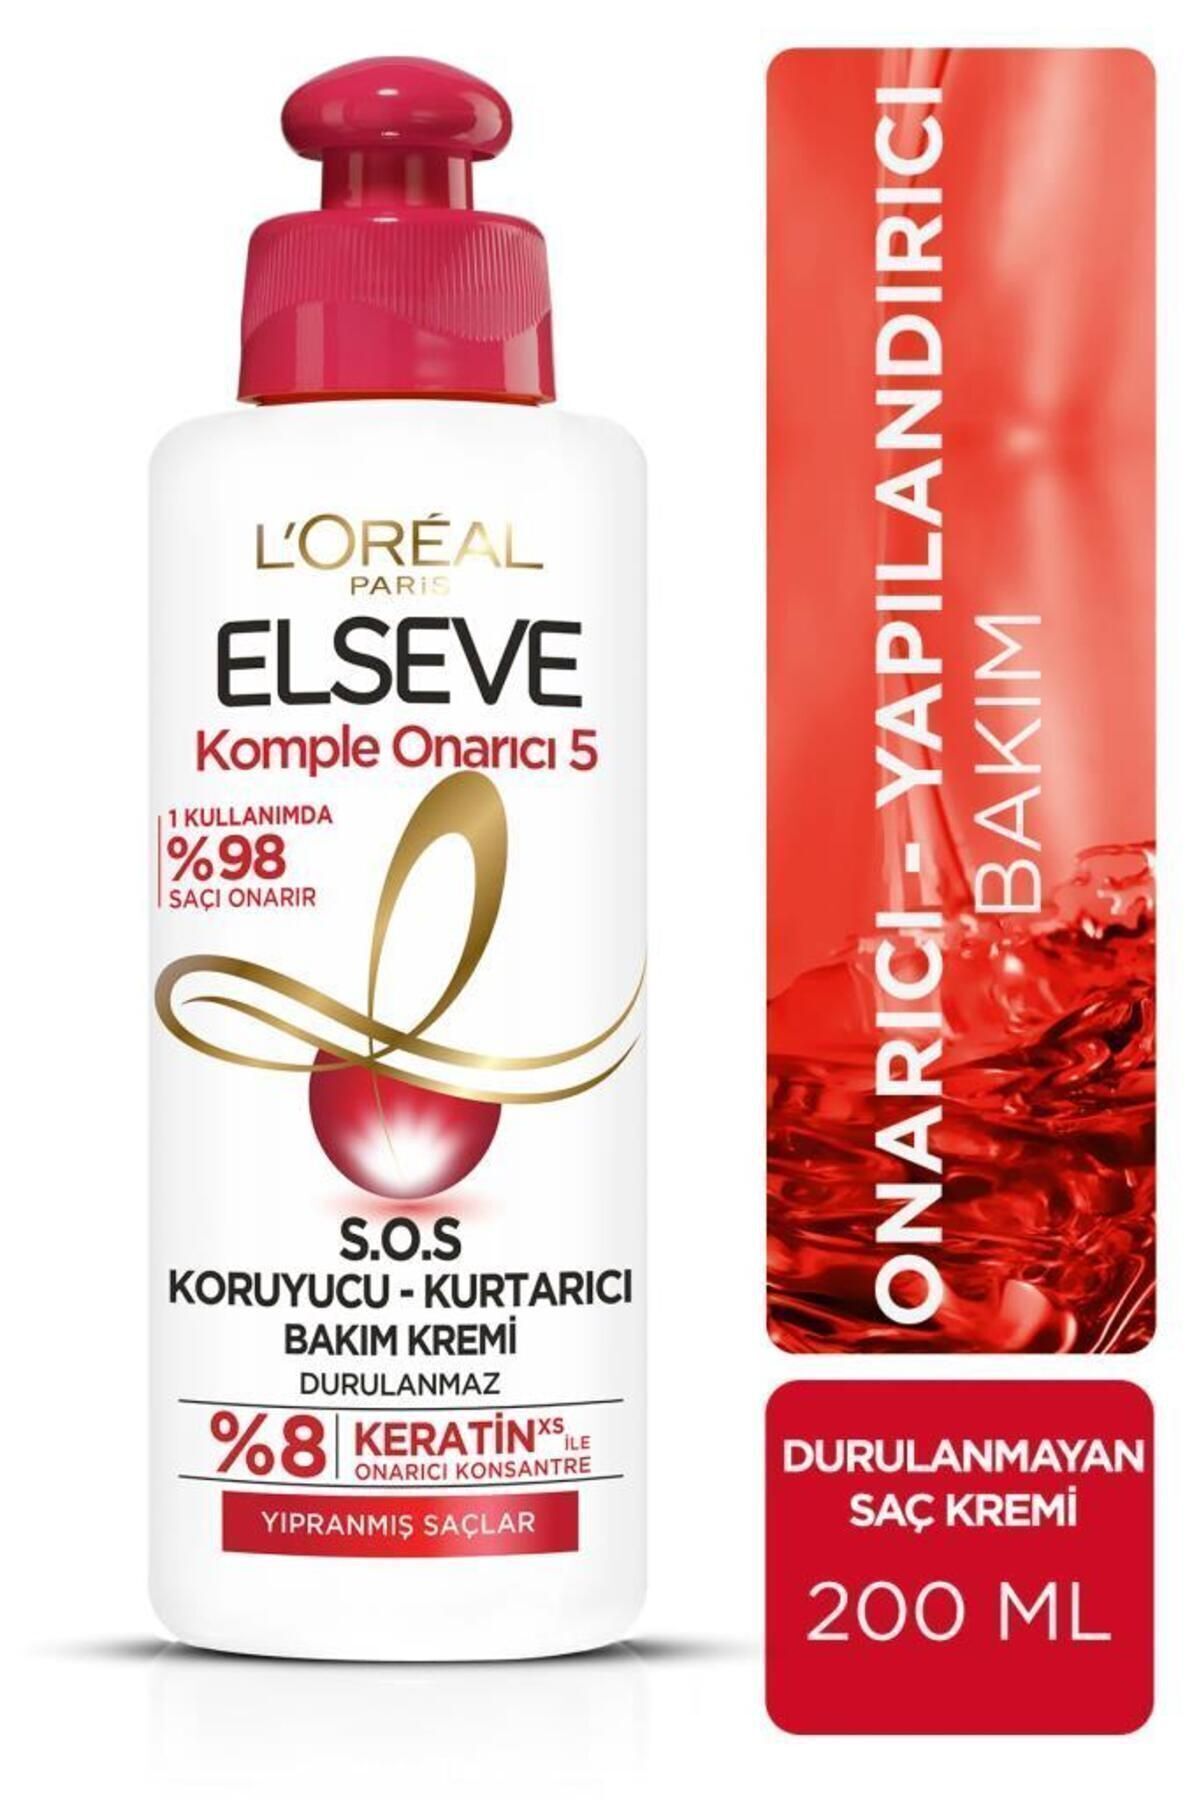 Elseve L'oréal Paris Komple Onarıcı 5 S.o.s Koruyucu - Kurtarıcı Bakım Kremi 200 ml